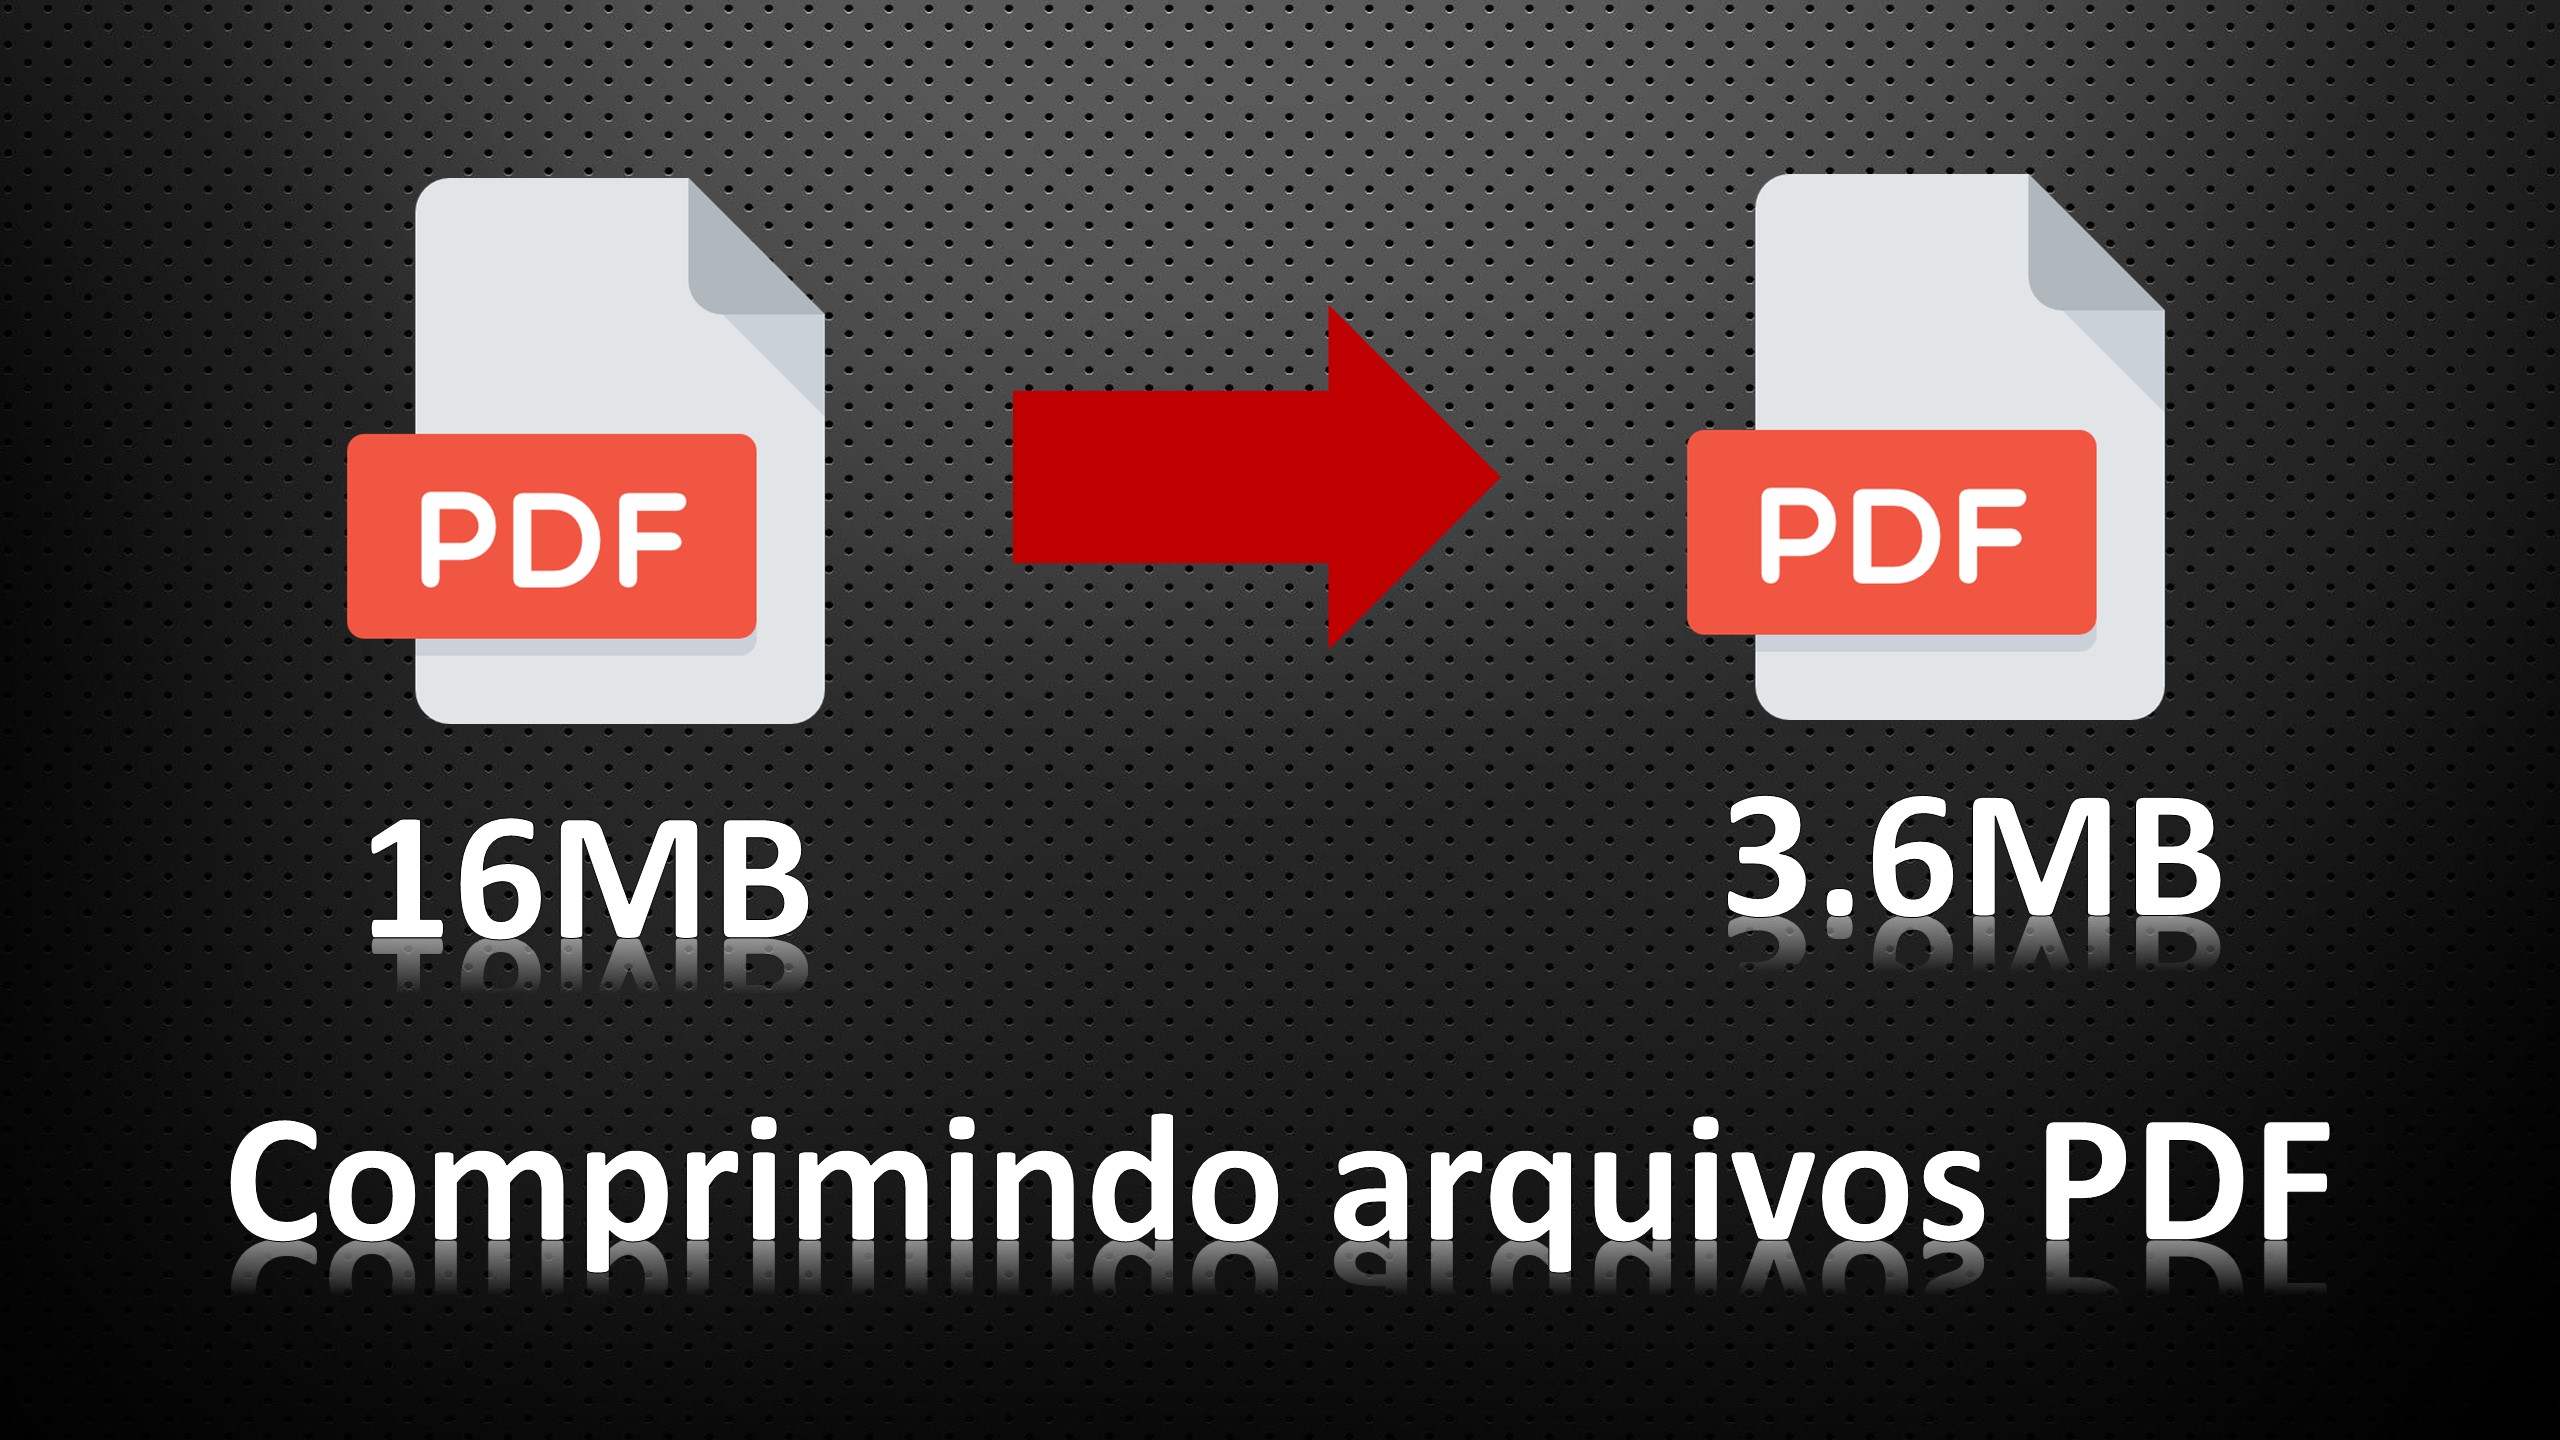 Como reduzir/diminuir arquivos PDF?